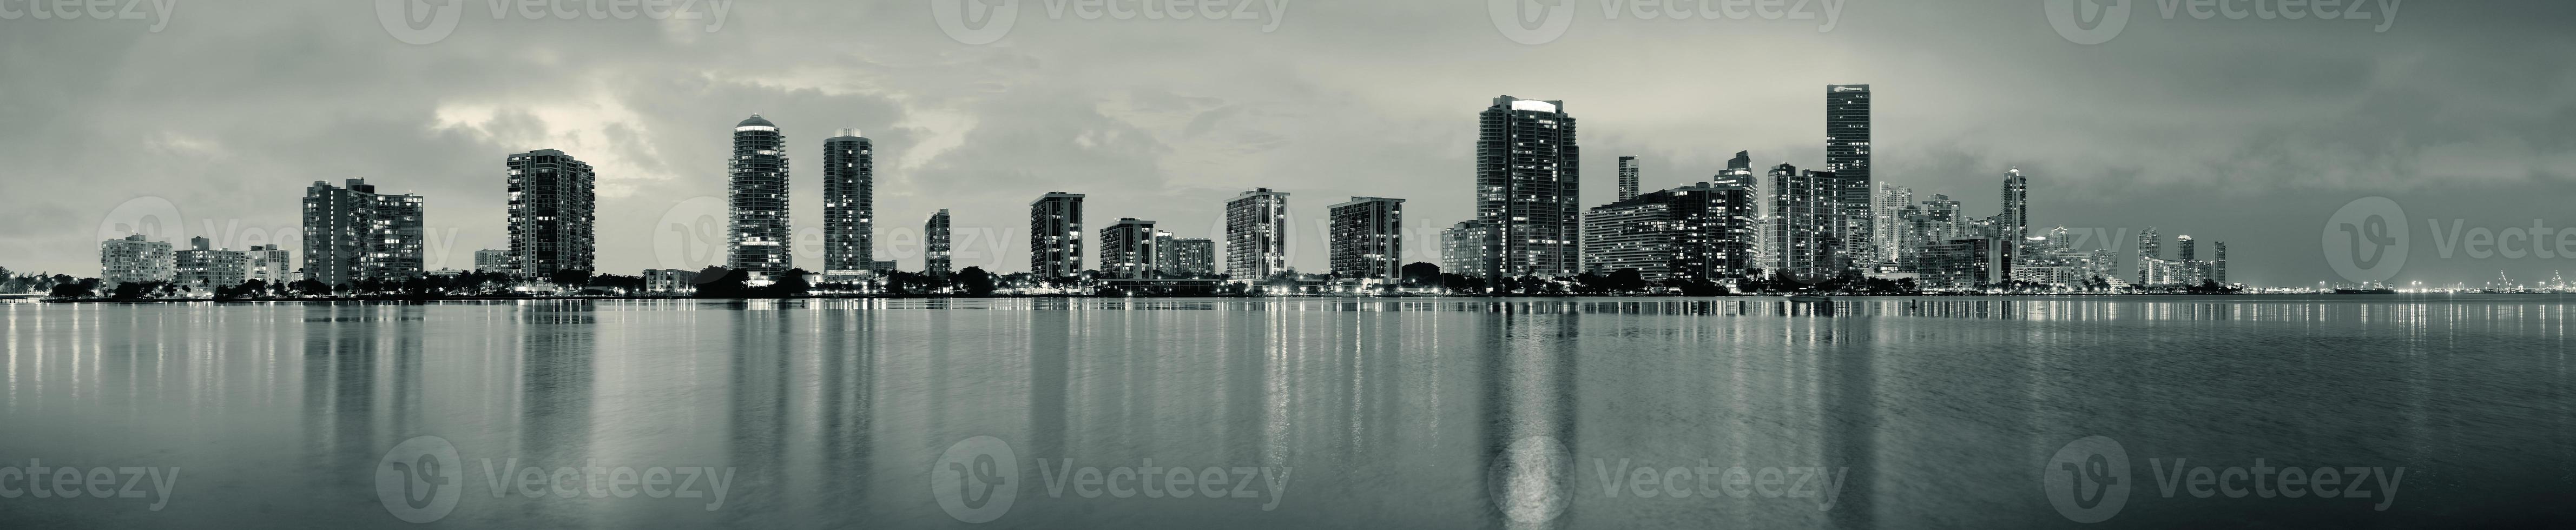 Miami night scene photo